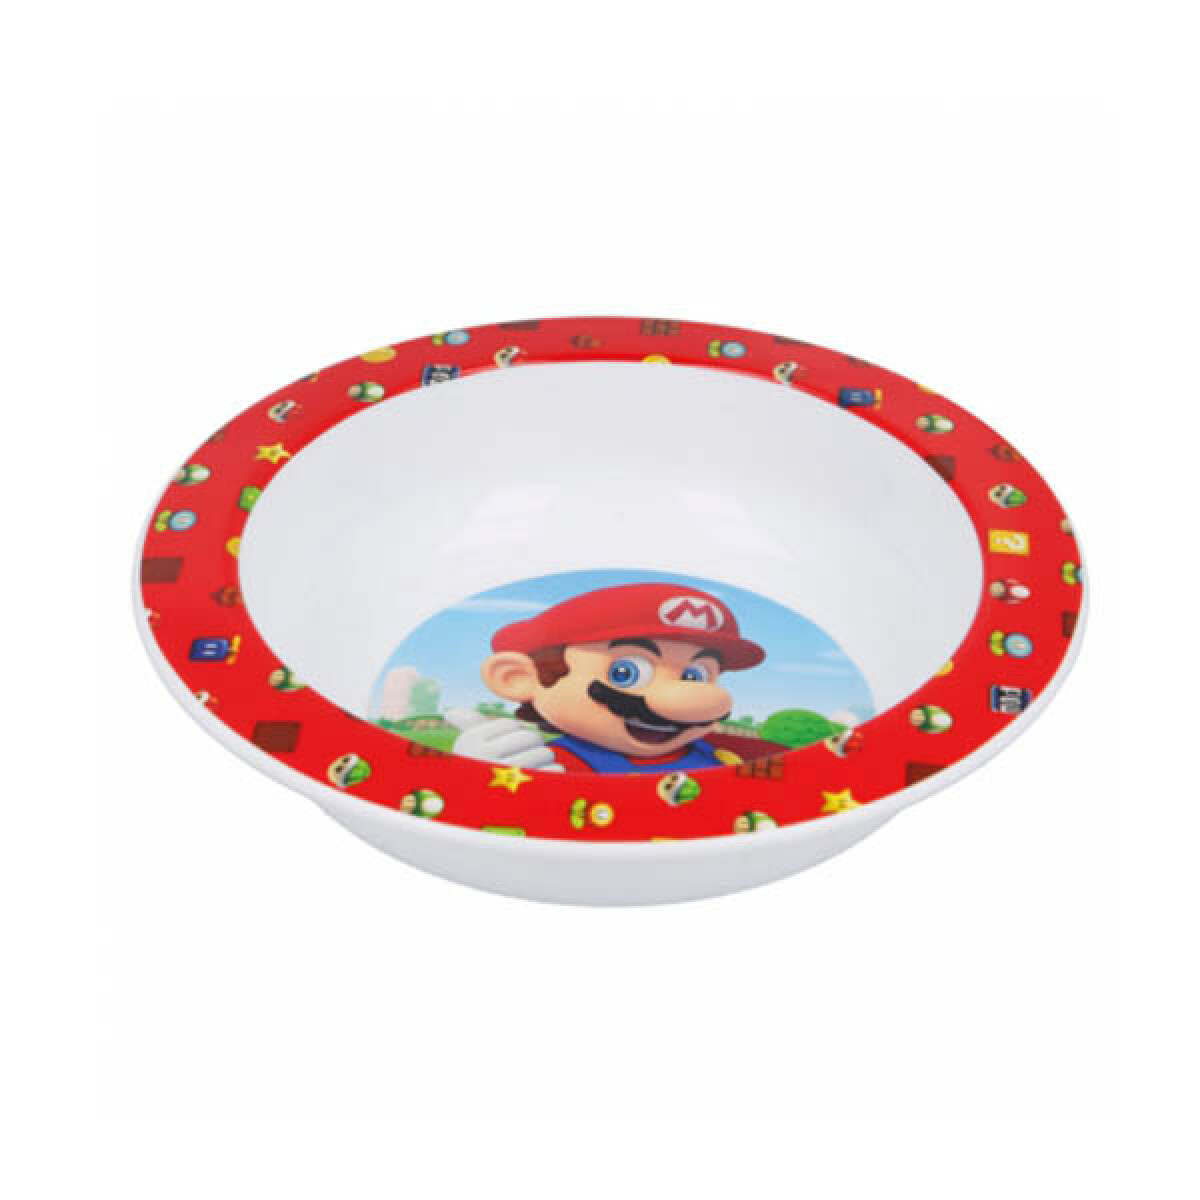 Bowl Plástico Super Mario Oficial 